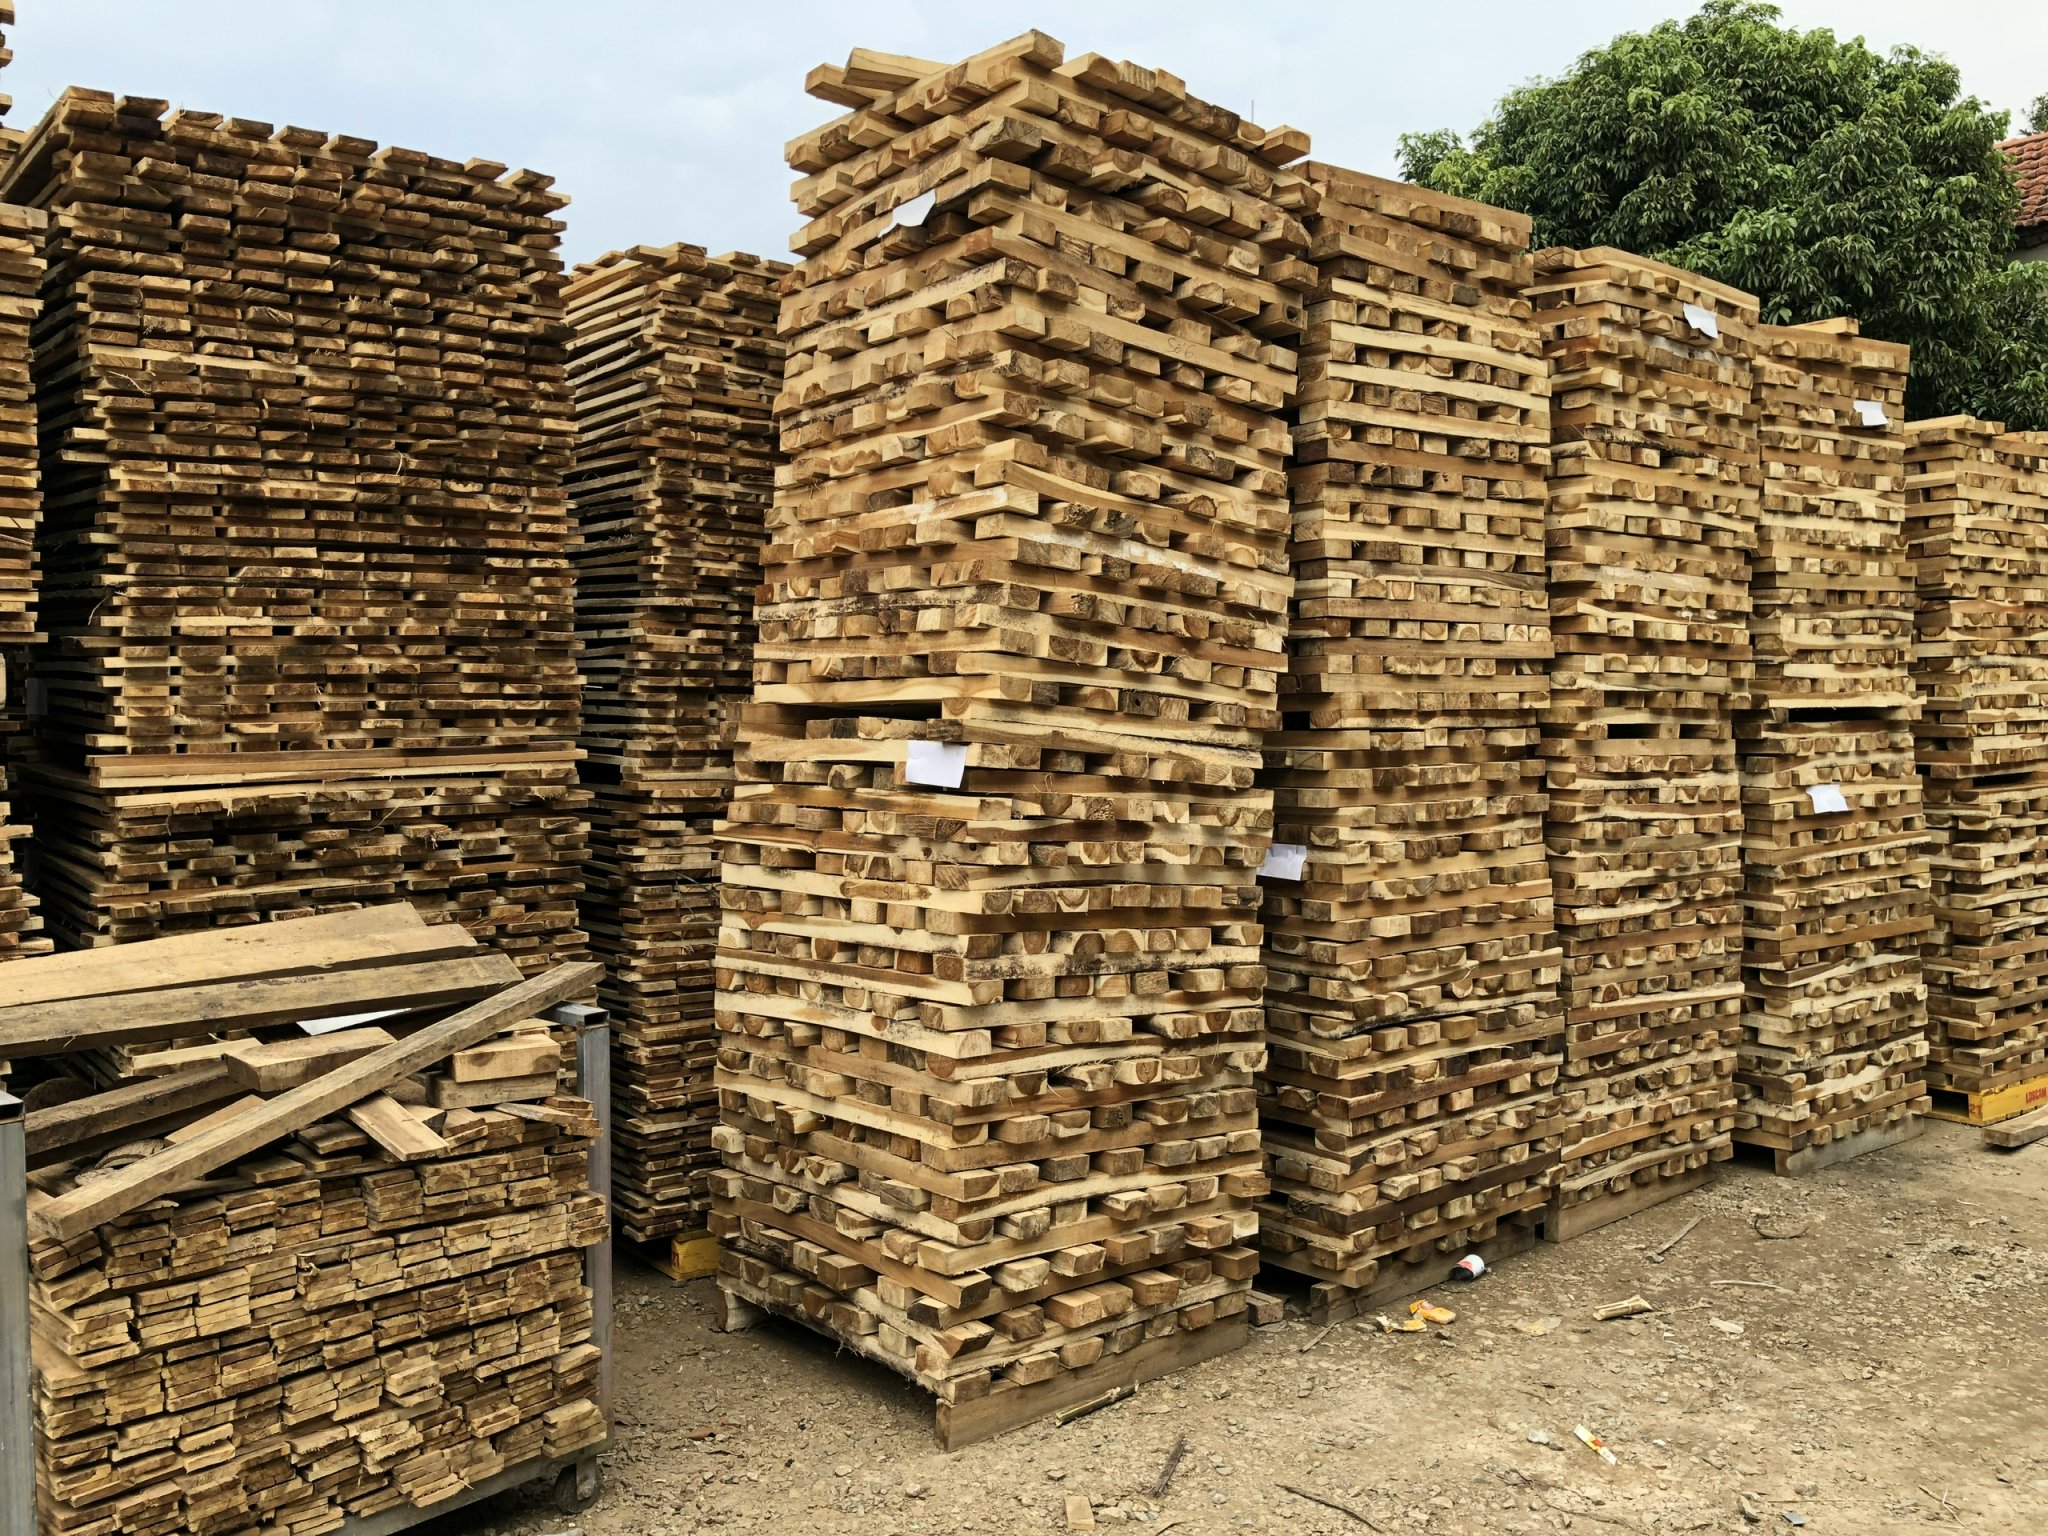 Pallet gỗ - Pallet HVG - Công Ty TNHH Đầu Tư & Sản Xuất HVG